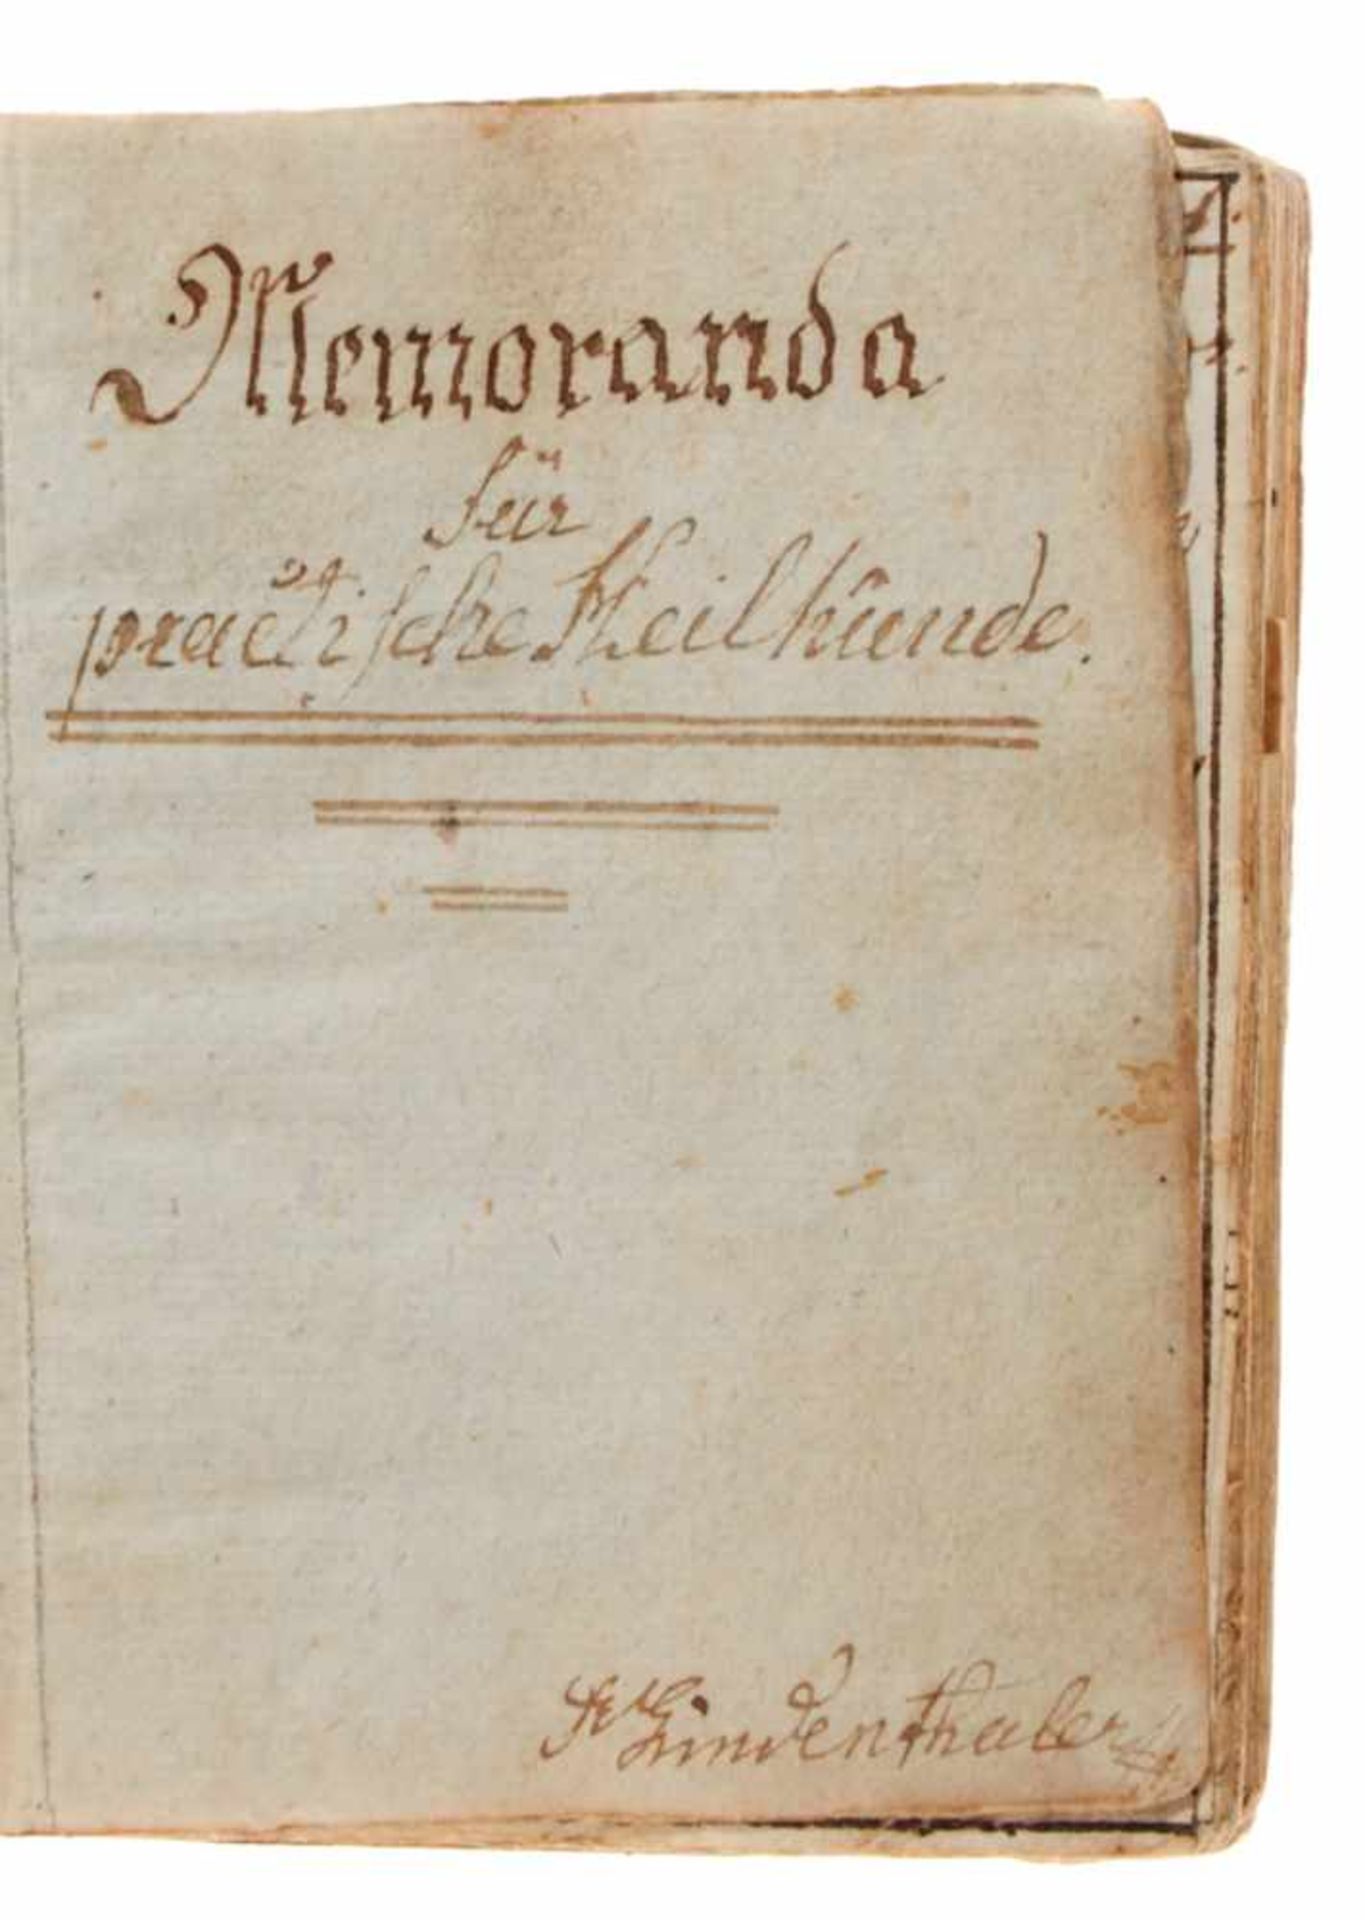 Pharmazeutisches Rezeptbuch "Memoranda für practische Heilkunde". Lateinische Handschrift auf - Bild 3 aus 4